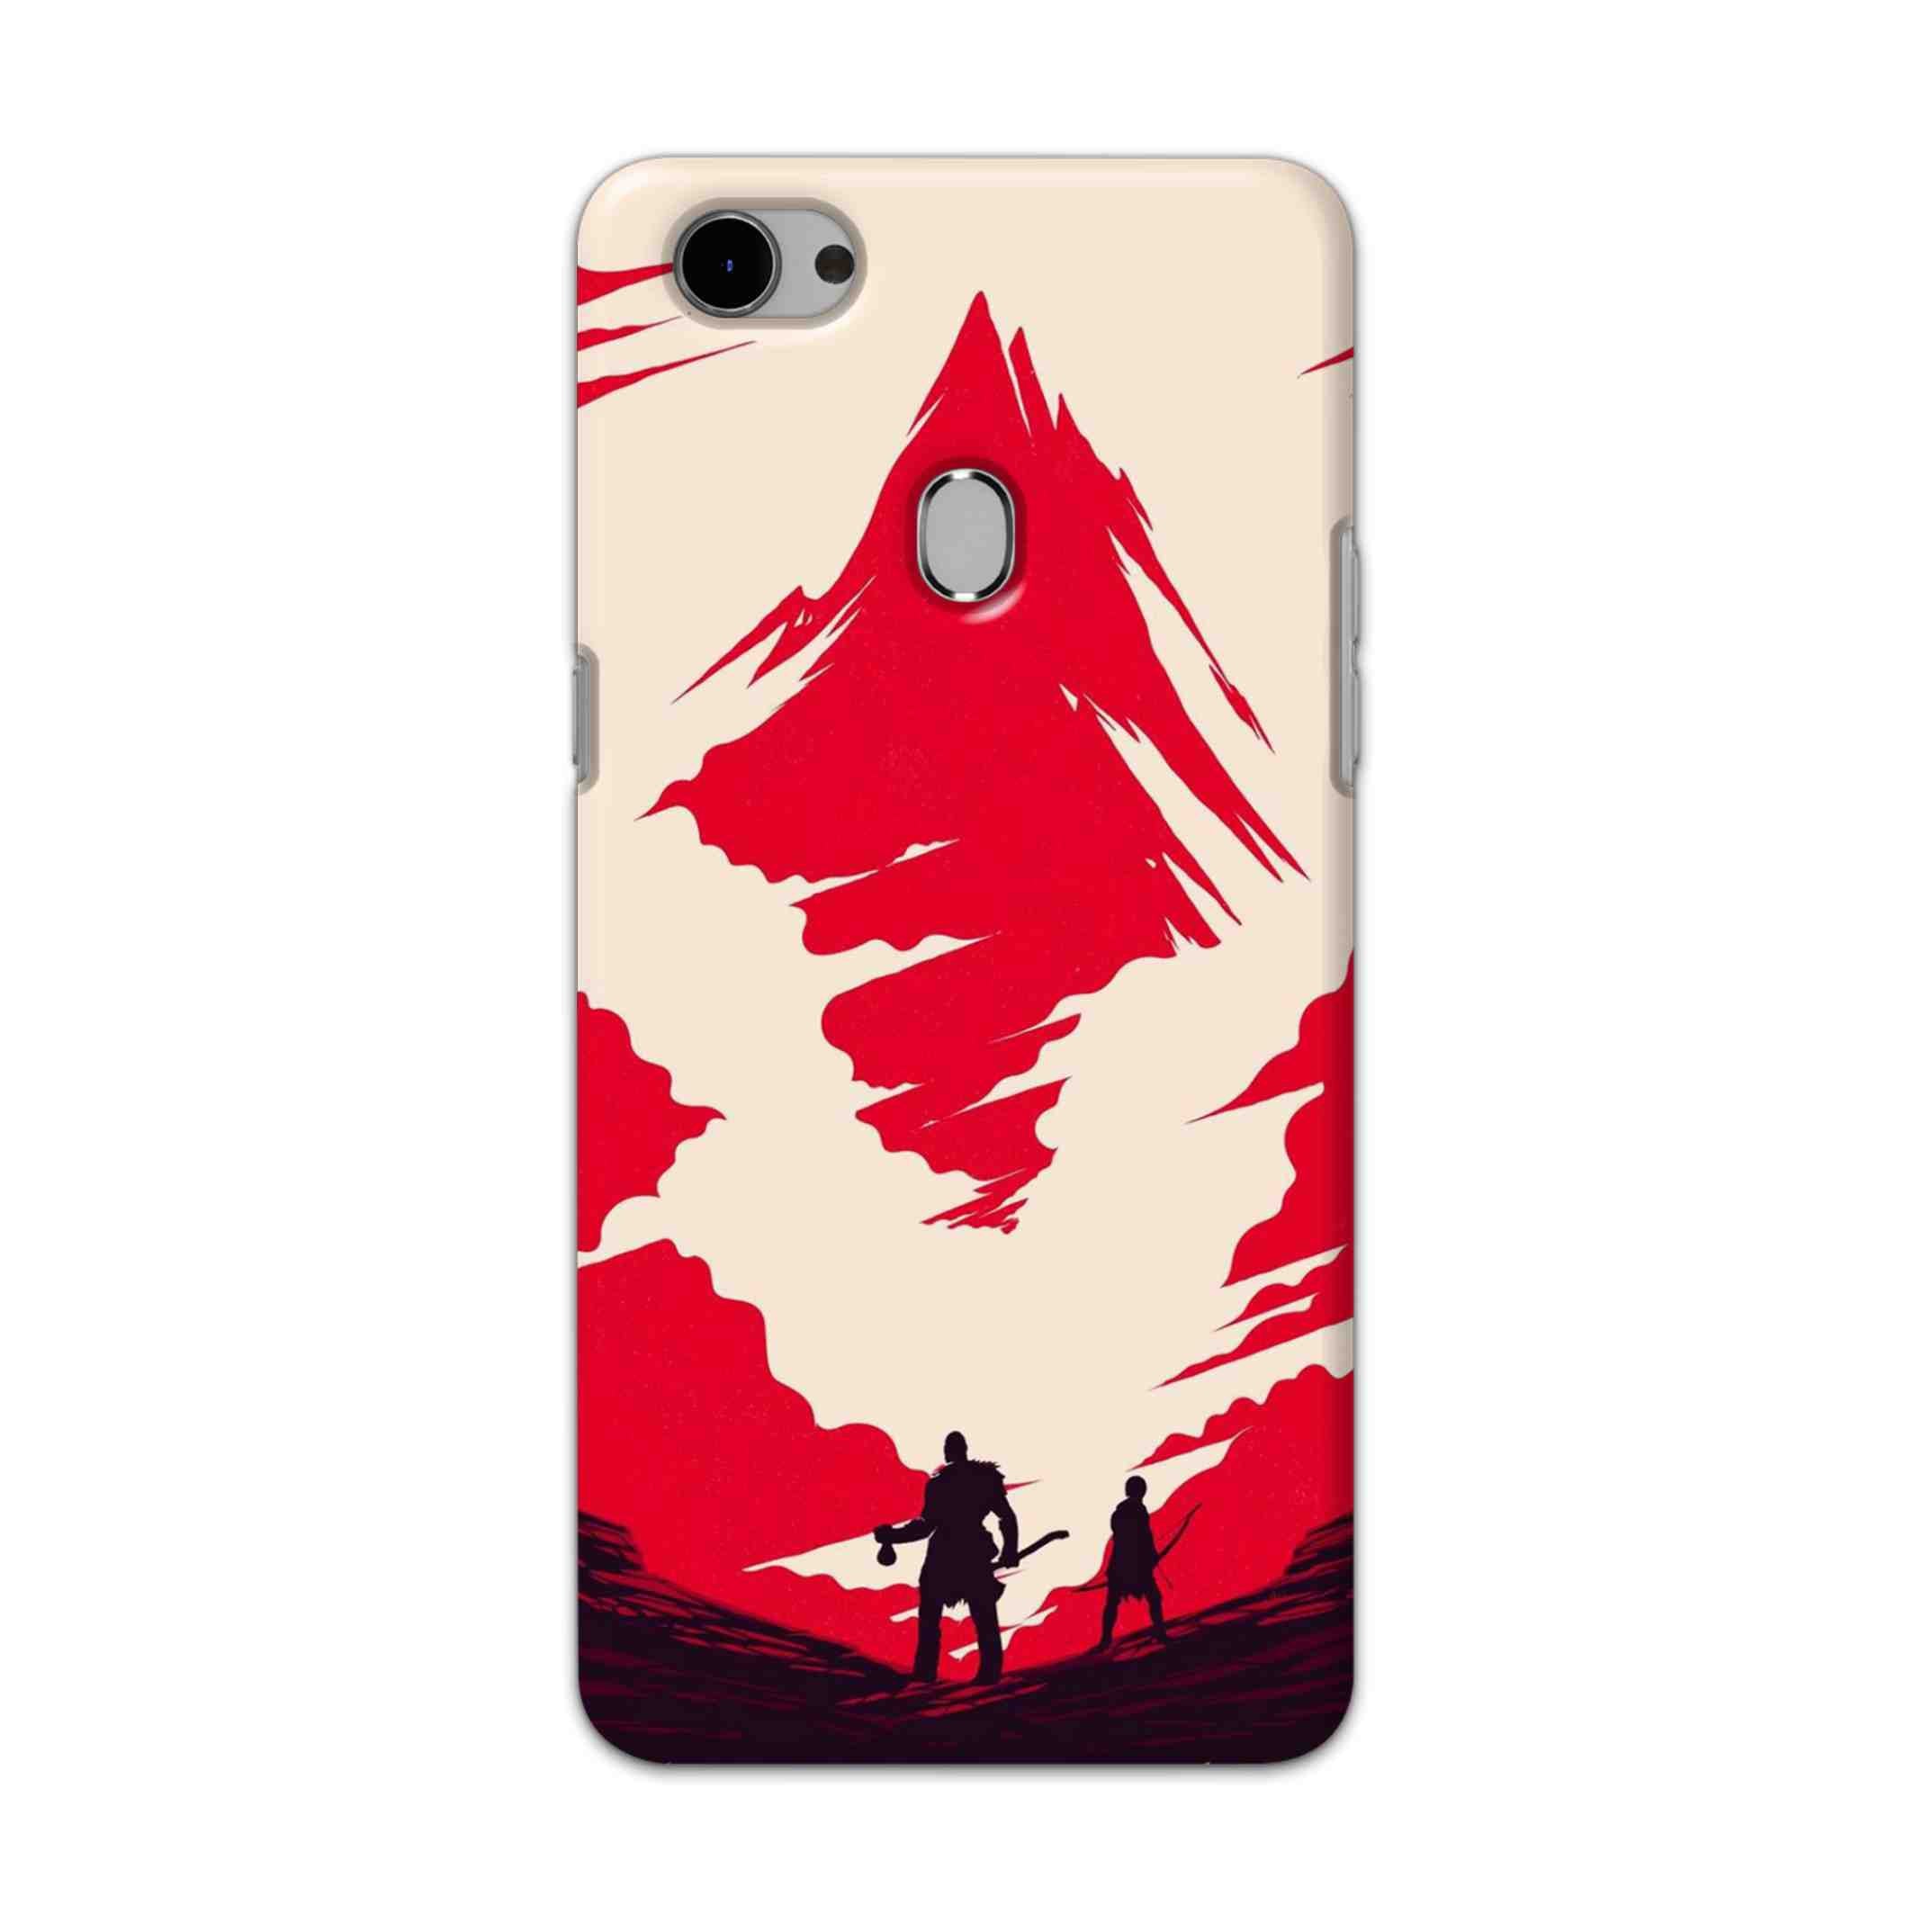 Buy God Of War Art Hard Back Mobile Phone Case Cover For Oppo F7 Online